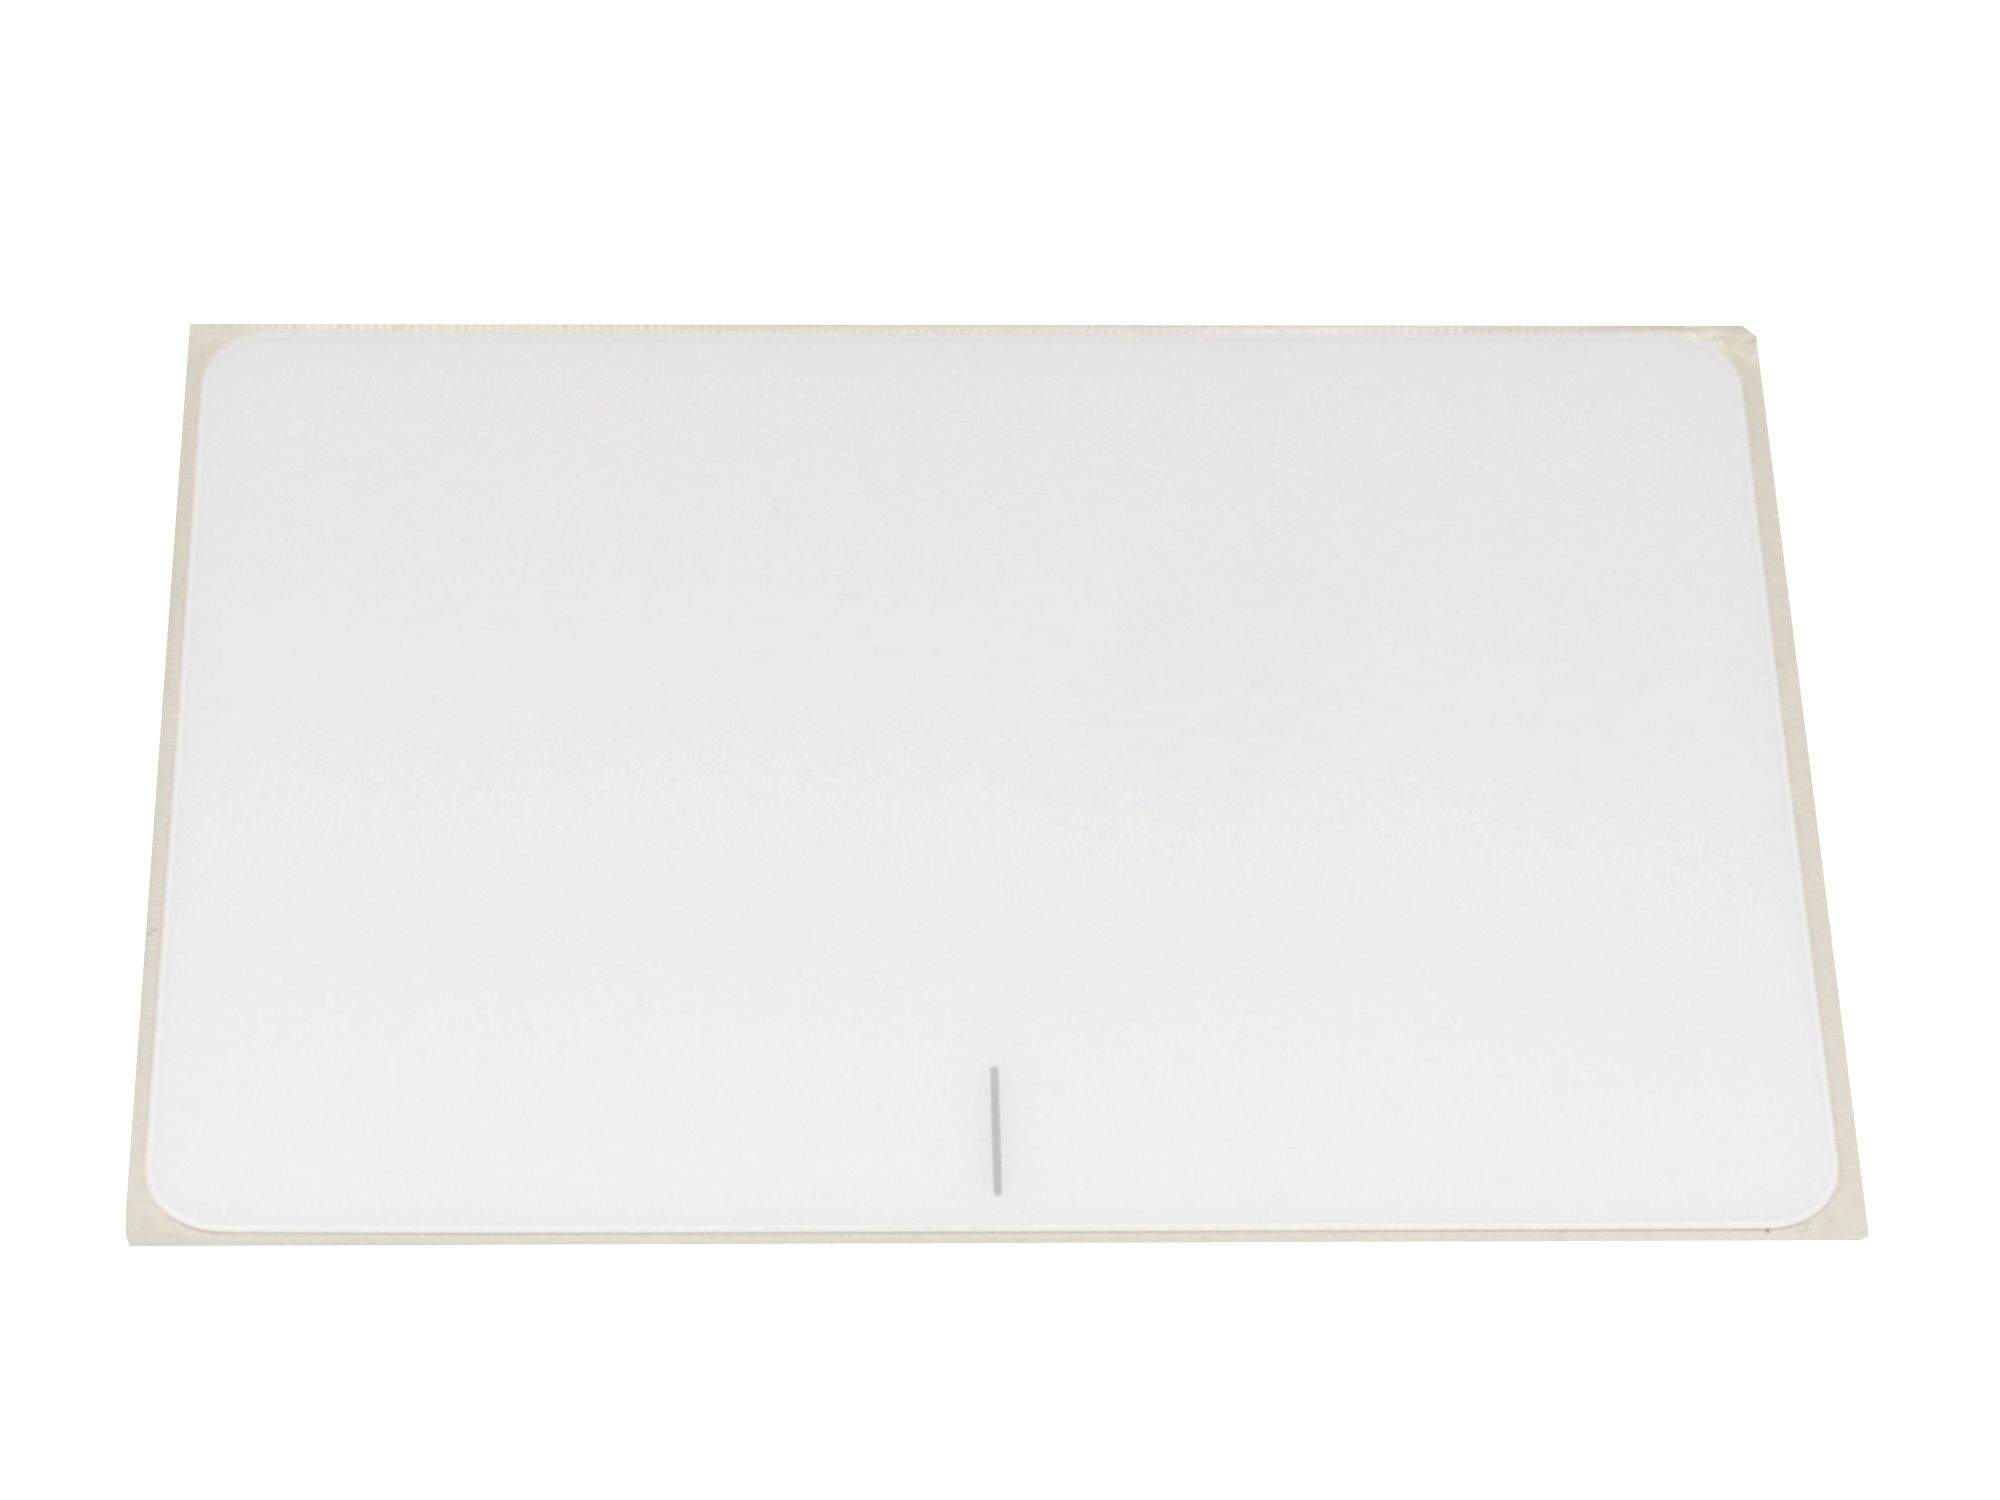 ASUS Touchpad Abdeckung weiß Original für Asus VivoBook X556UV Serie